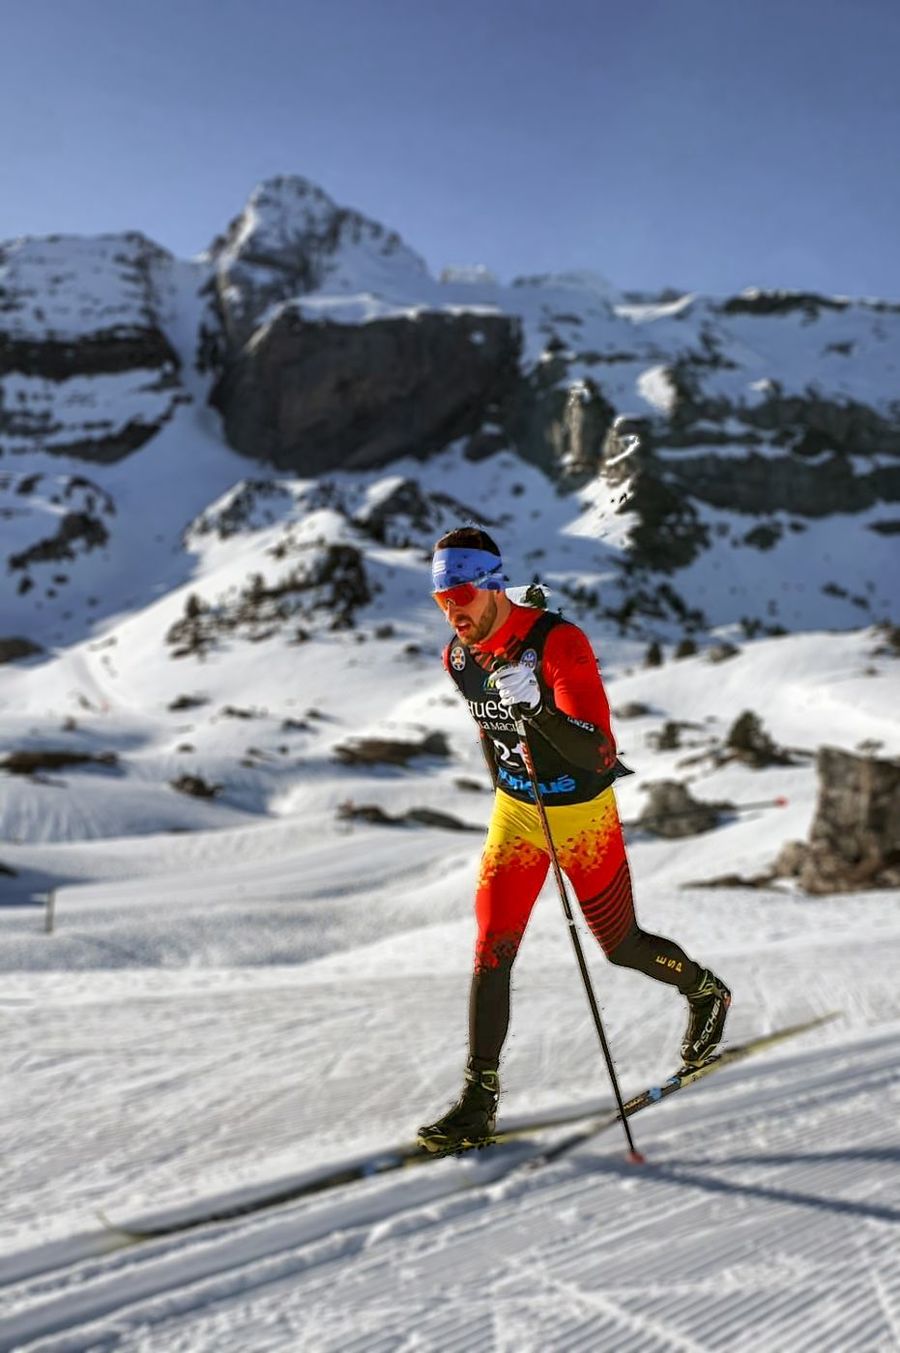 Esquiadores del Cuerpo de esqui de montaña del ejercito español